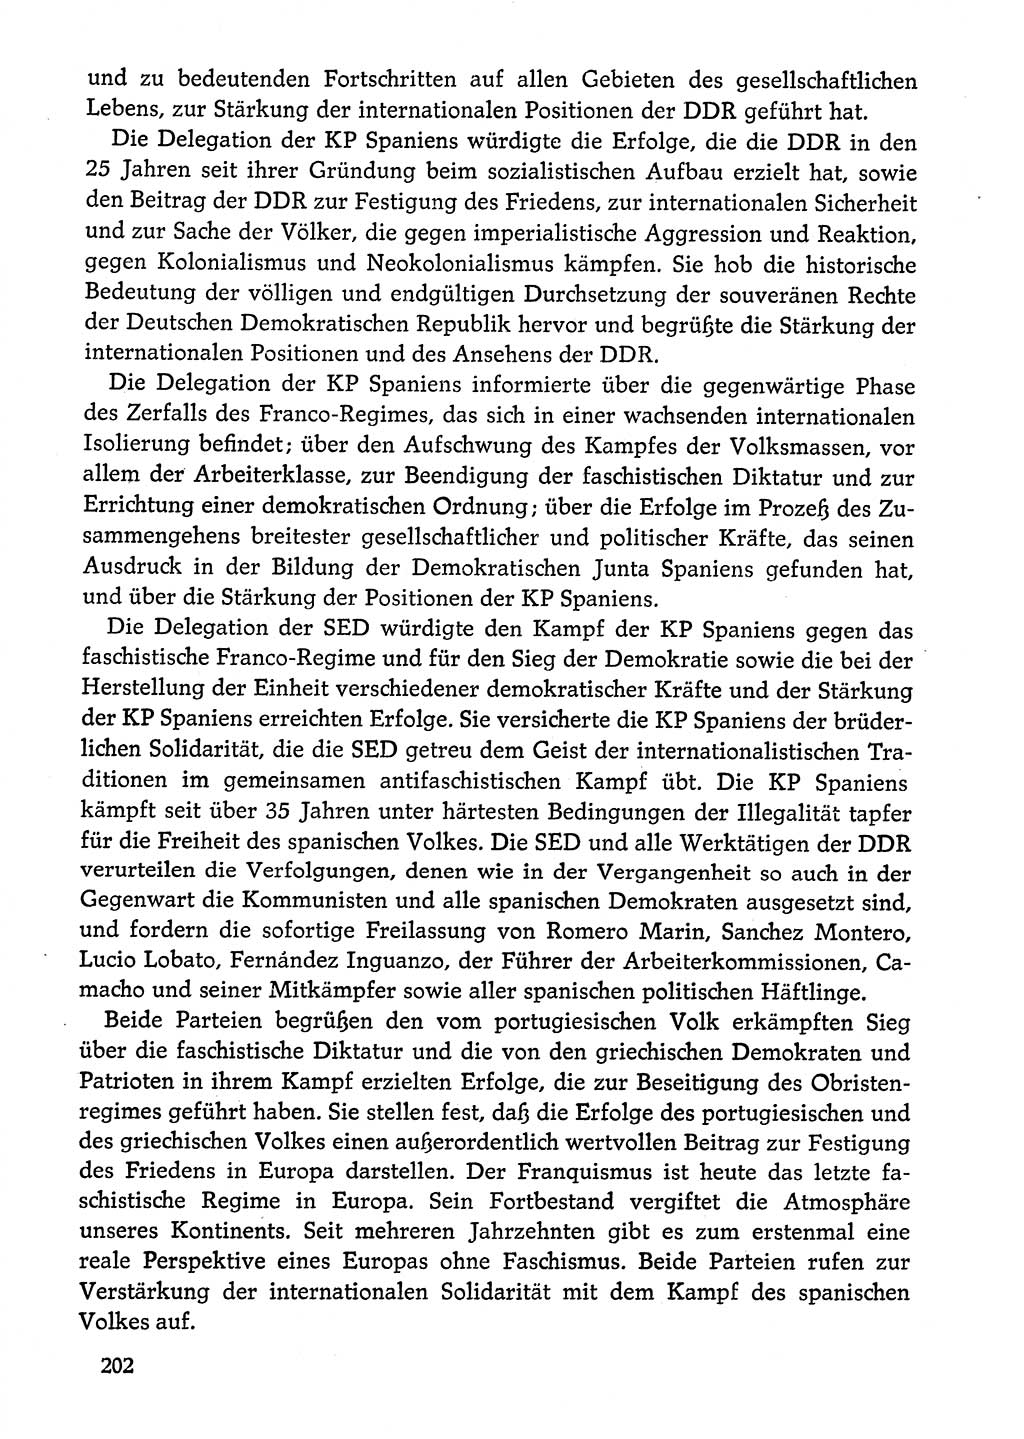 Dokumente der Sozialistischen Einheitspartei Deutschlands (SED) [Deutsche Demokratische Republik (DDR)] 1974-1975, Seite 202 (Dok. SED DDR 1978, Bd. ⅩⅤ, S. 202)